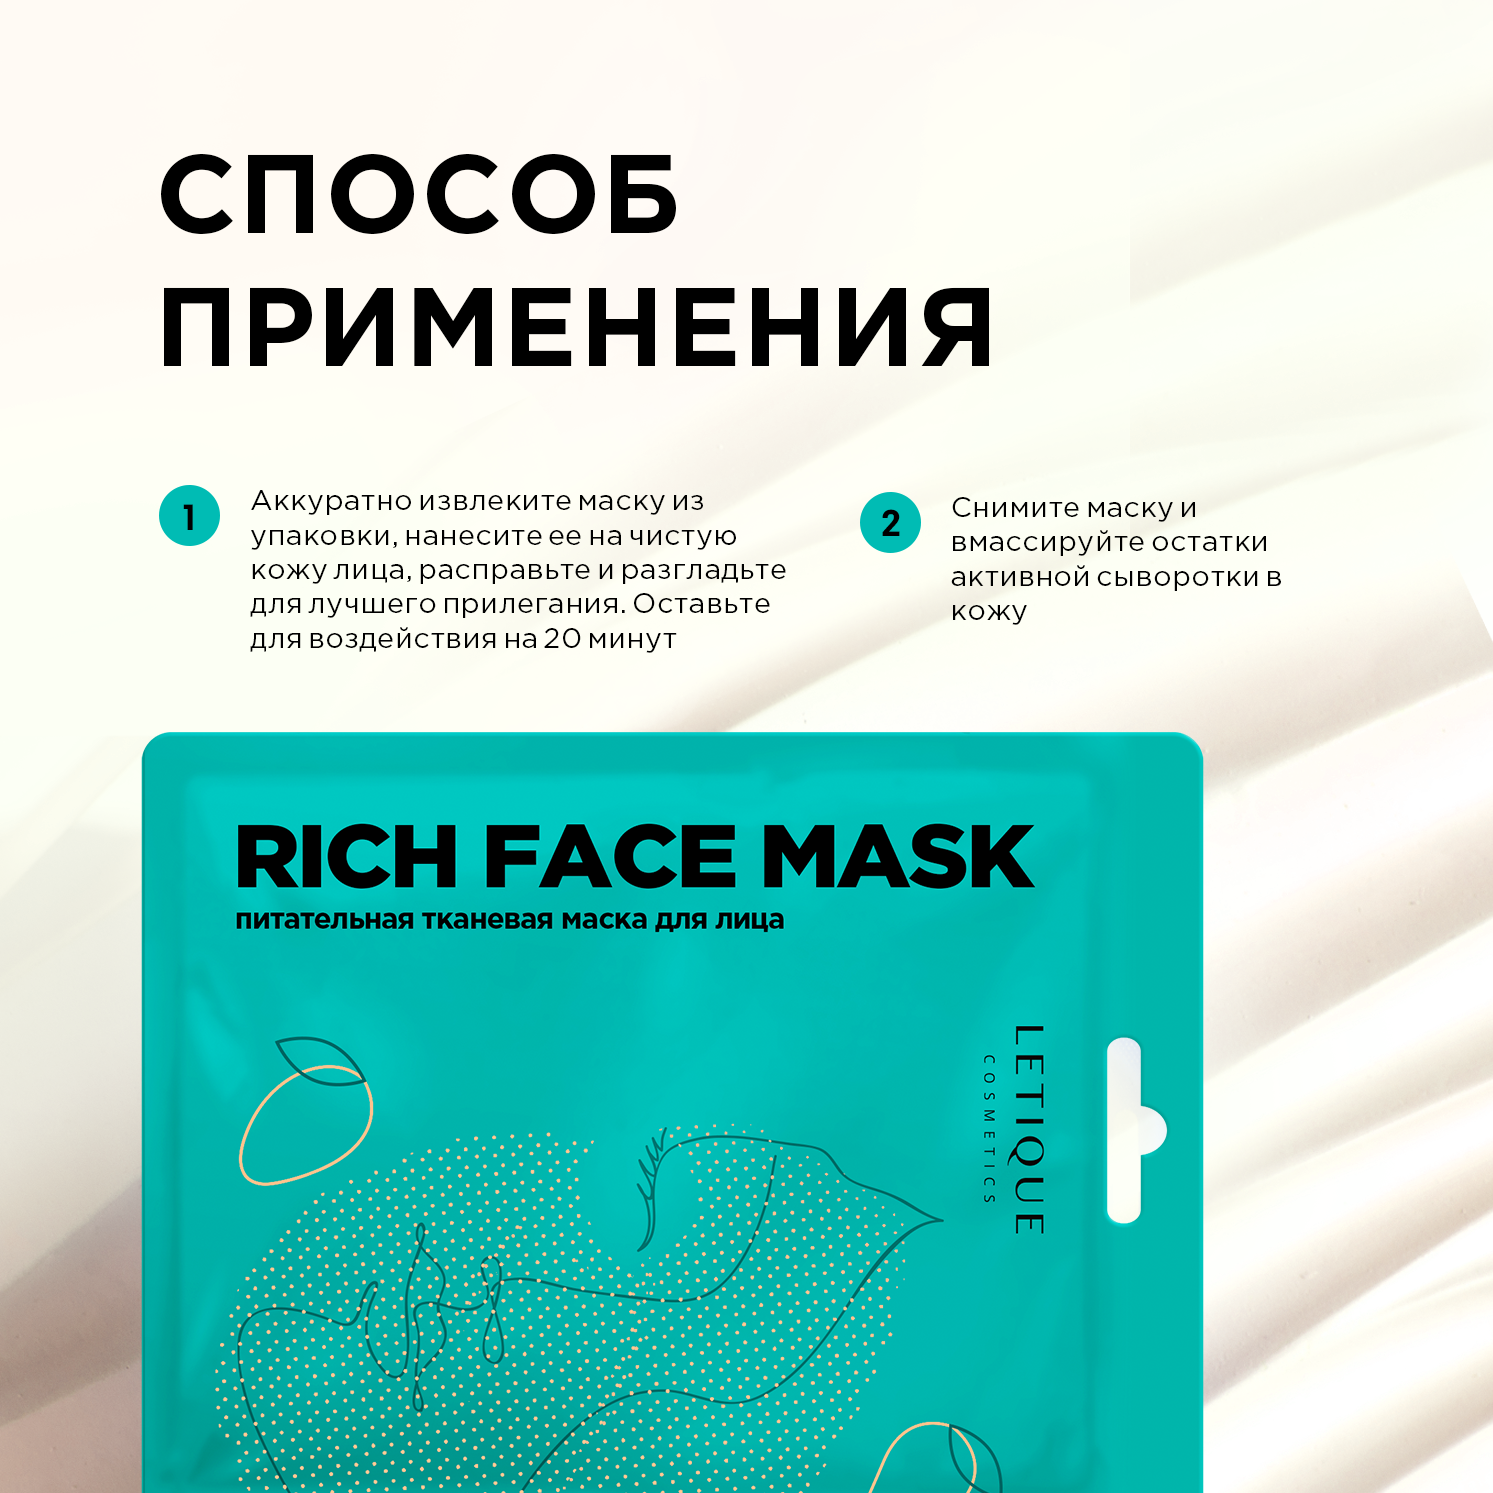 Питательная тканевая маска RICH FACE MASK, Letique Cosmetics